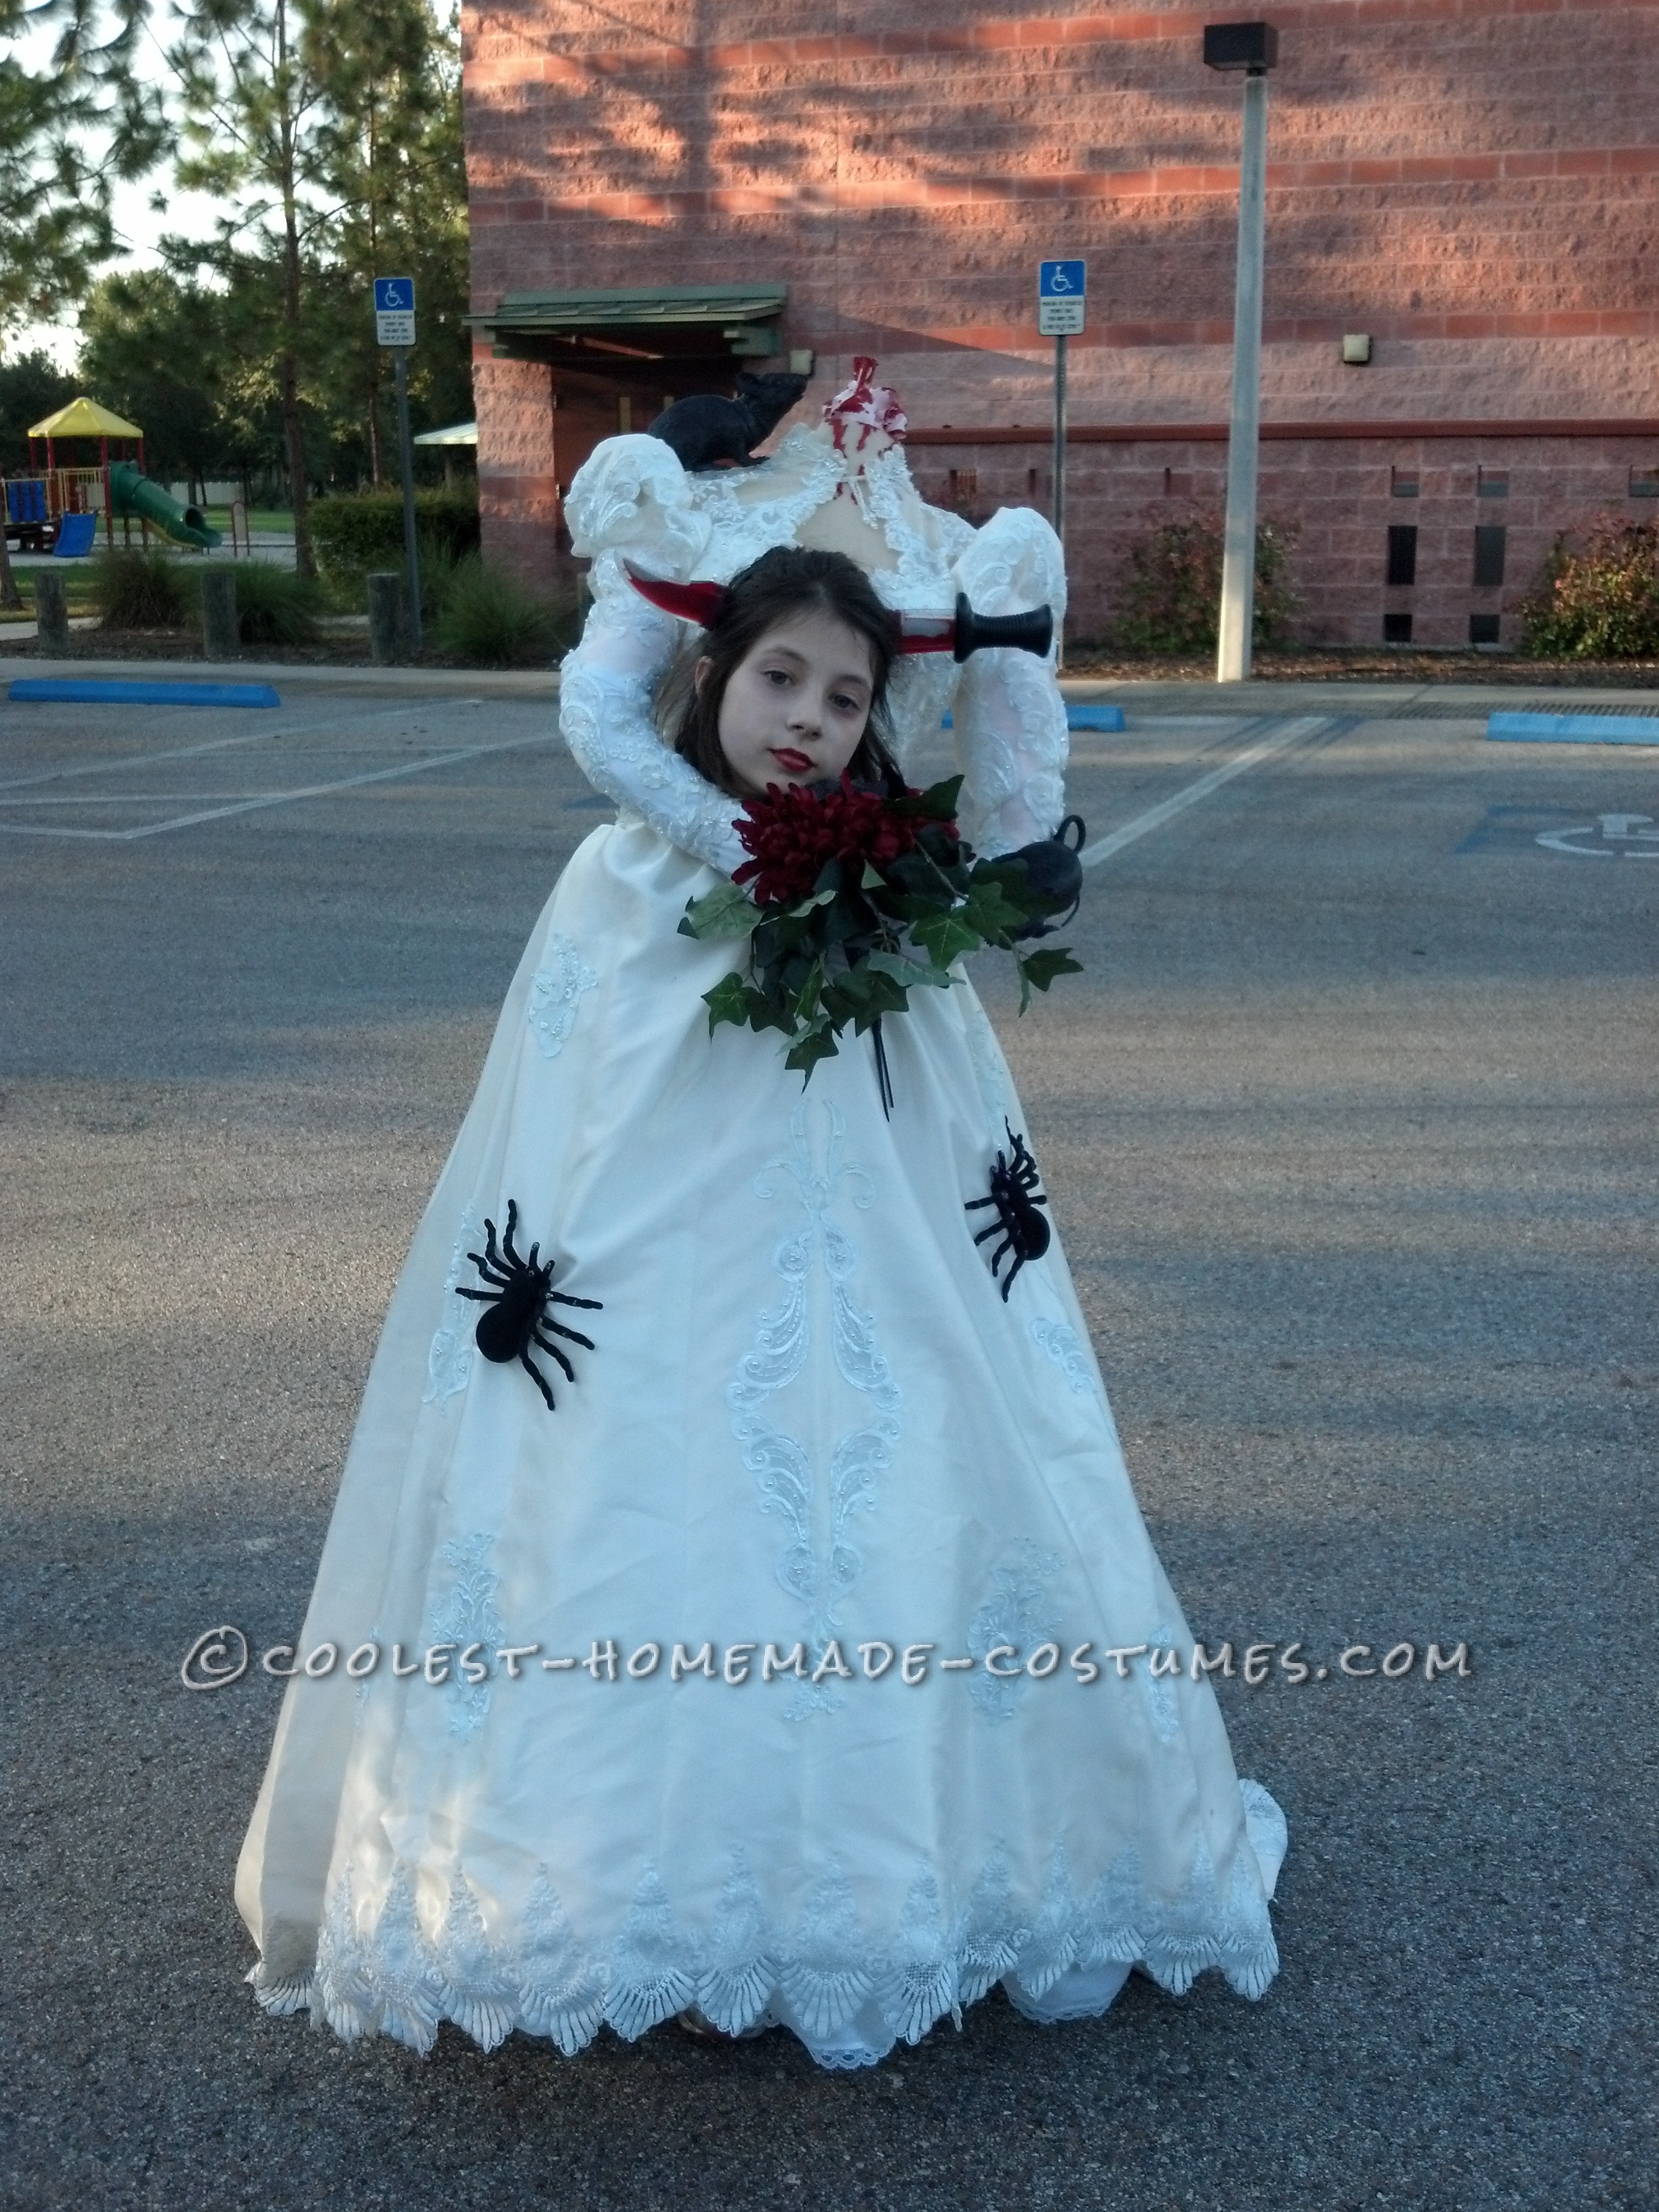 DIY Bride Costume